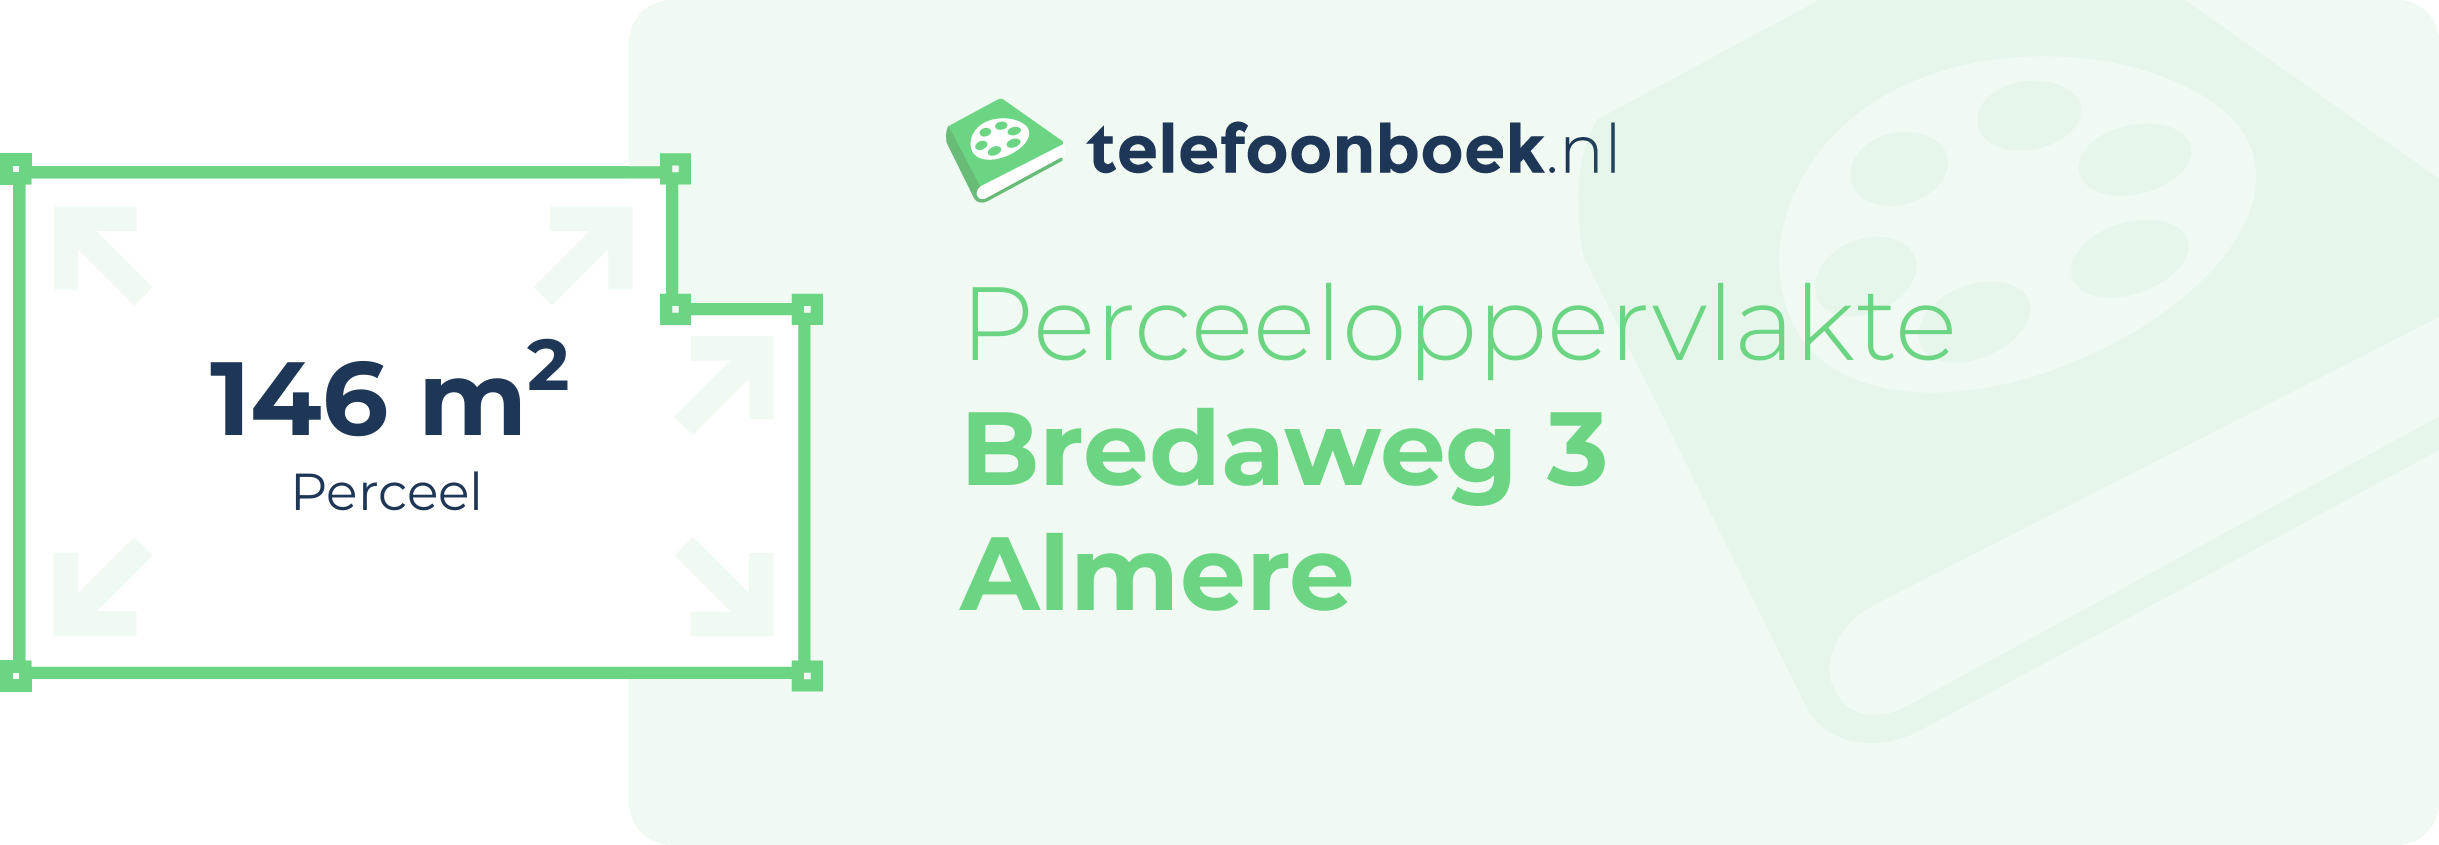 Perceeloppervlakte Bredaweg 3 Almere